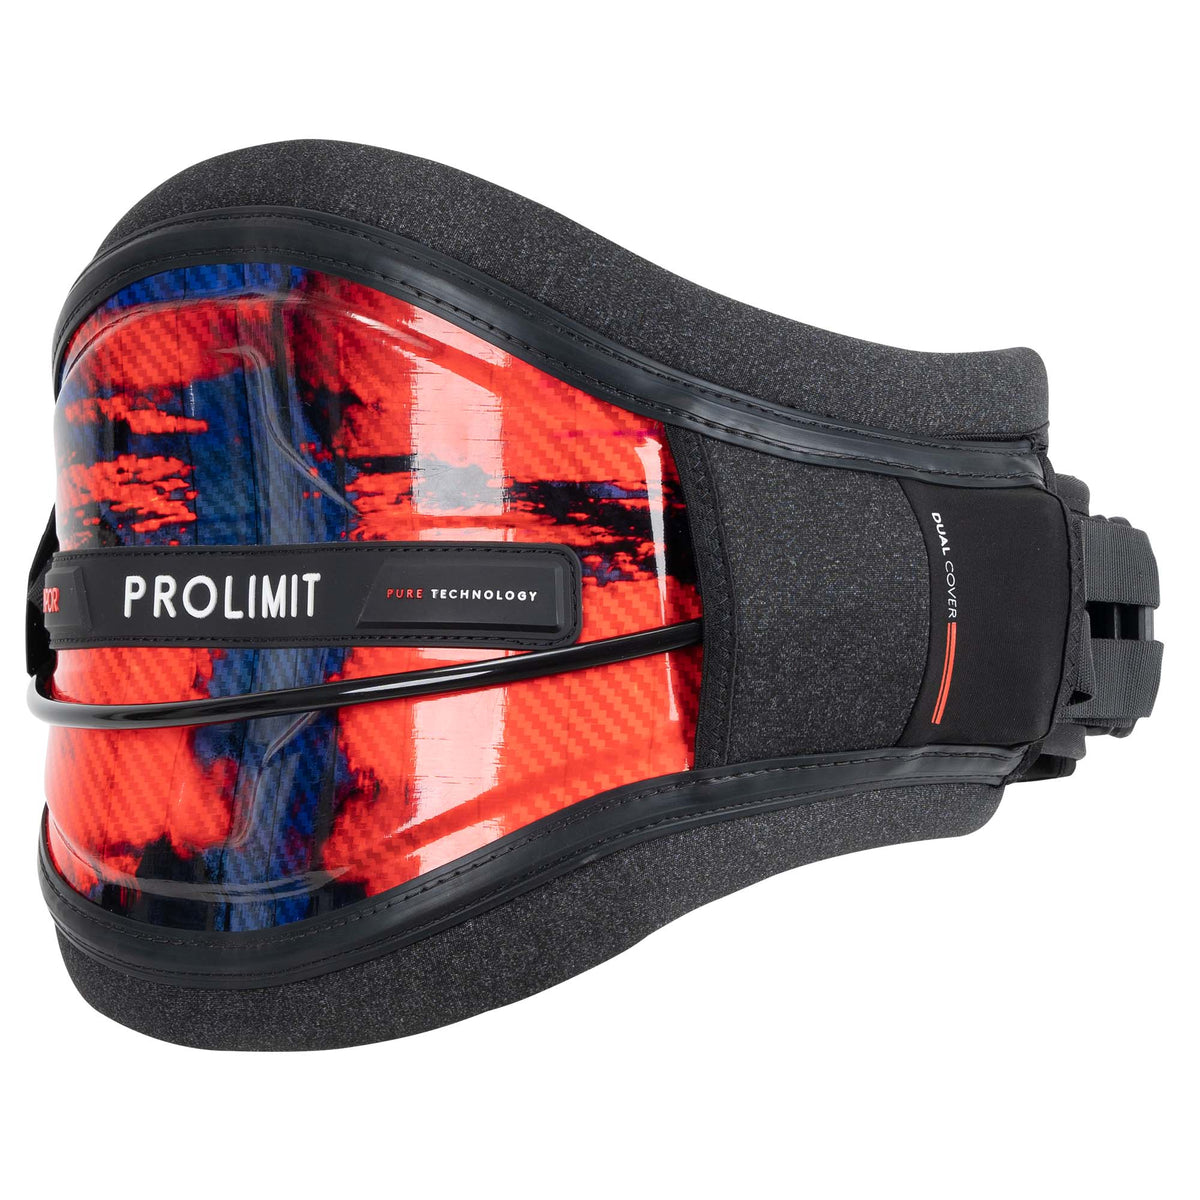 PROLIMIT VAPOR rigid kitesurfing harness